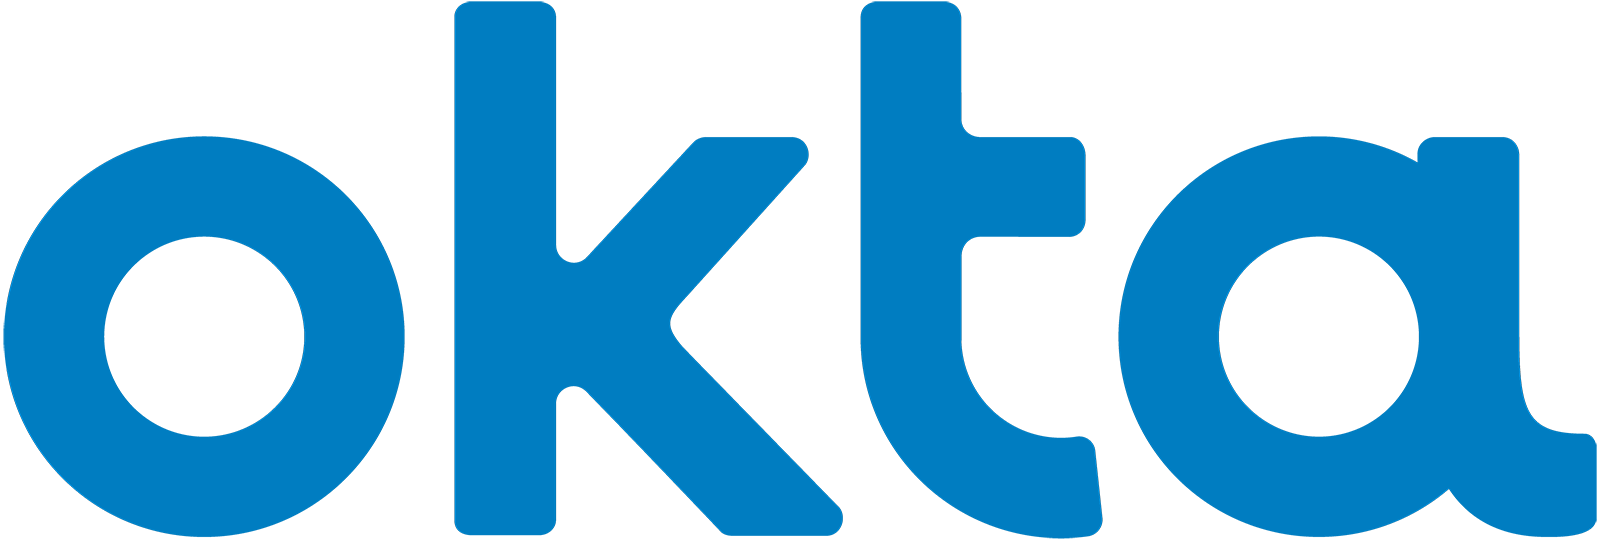 Okta_Logo_BrightBlue_Medium